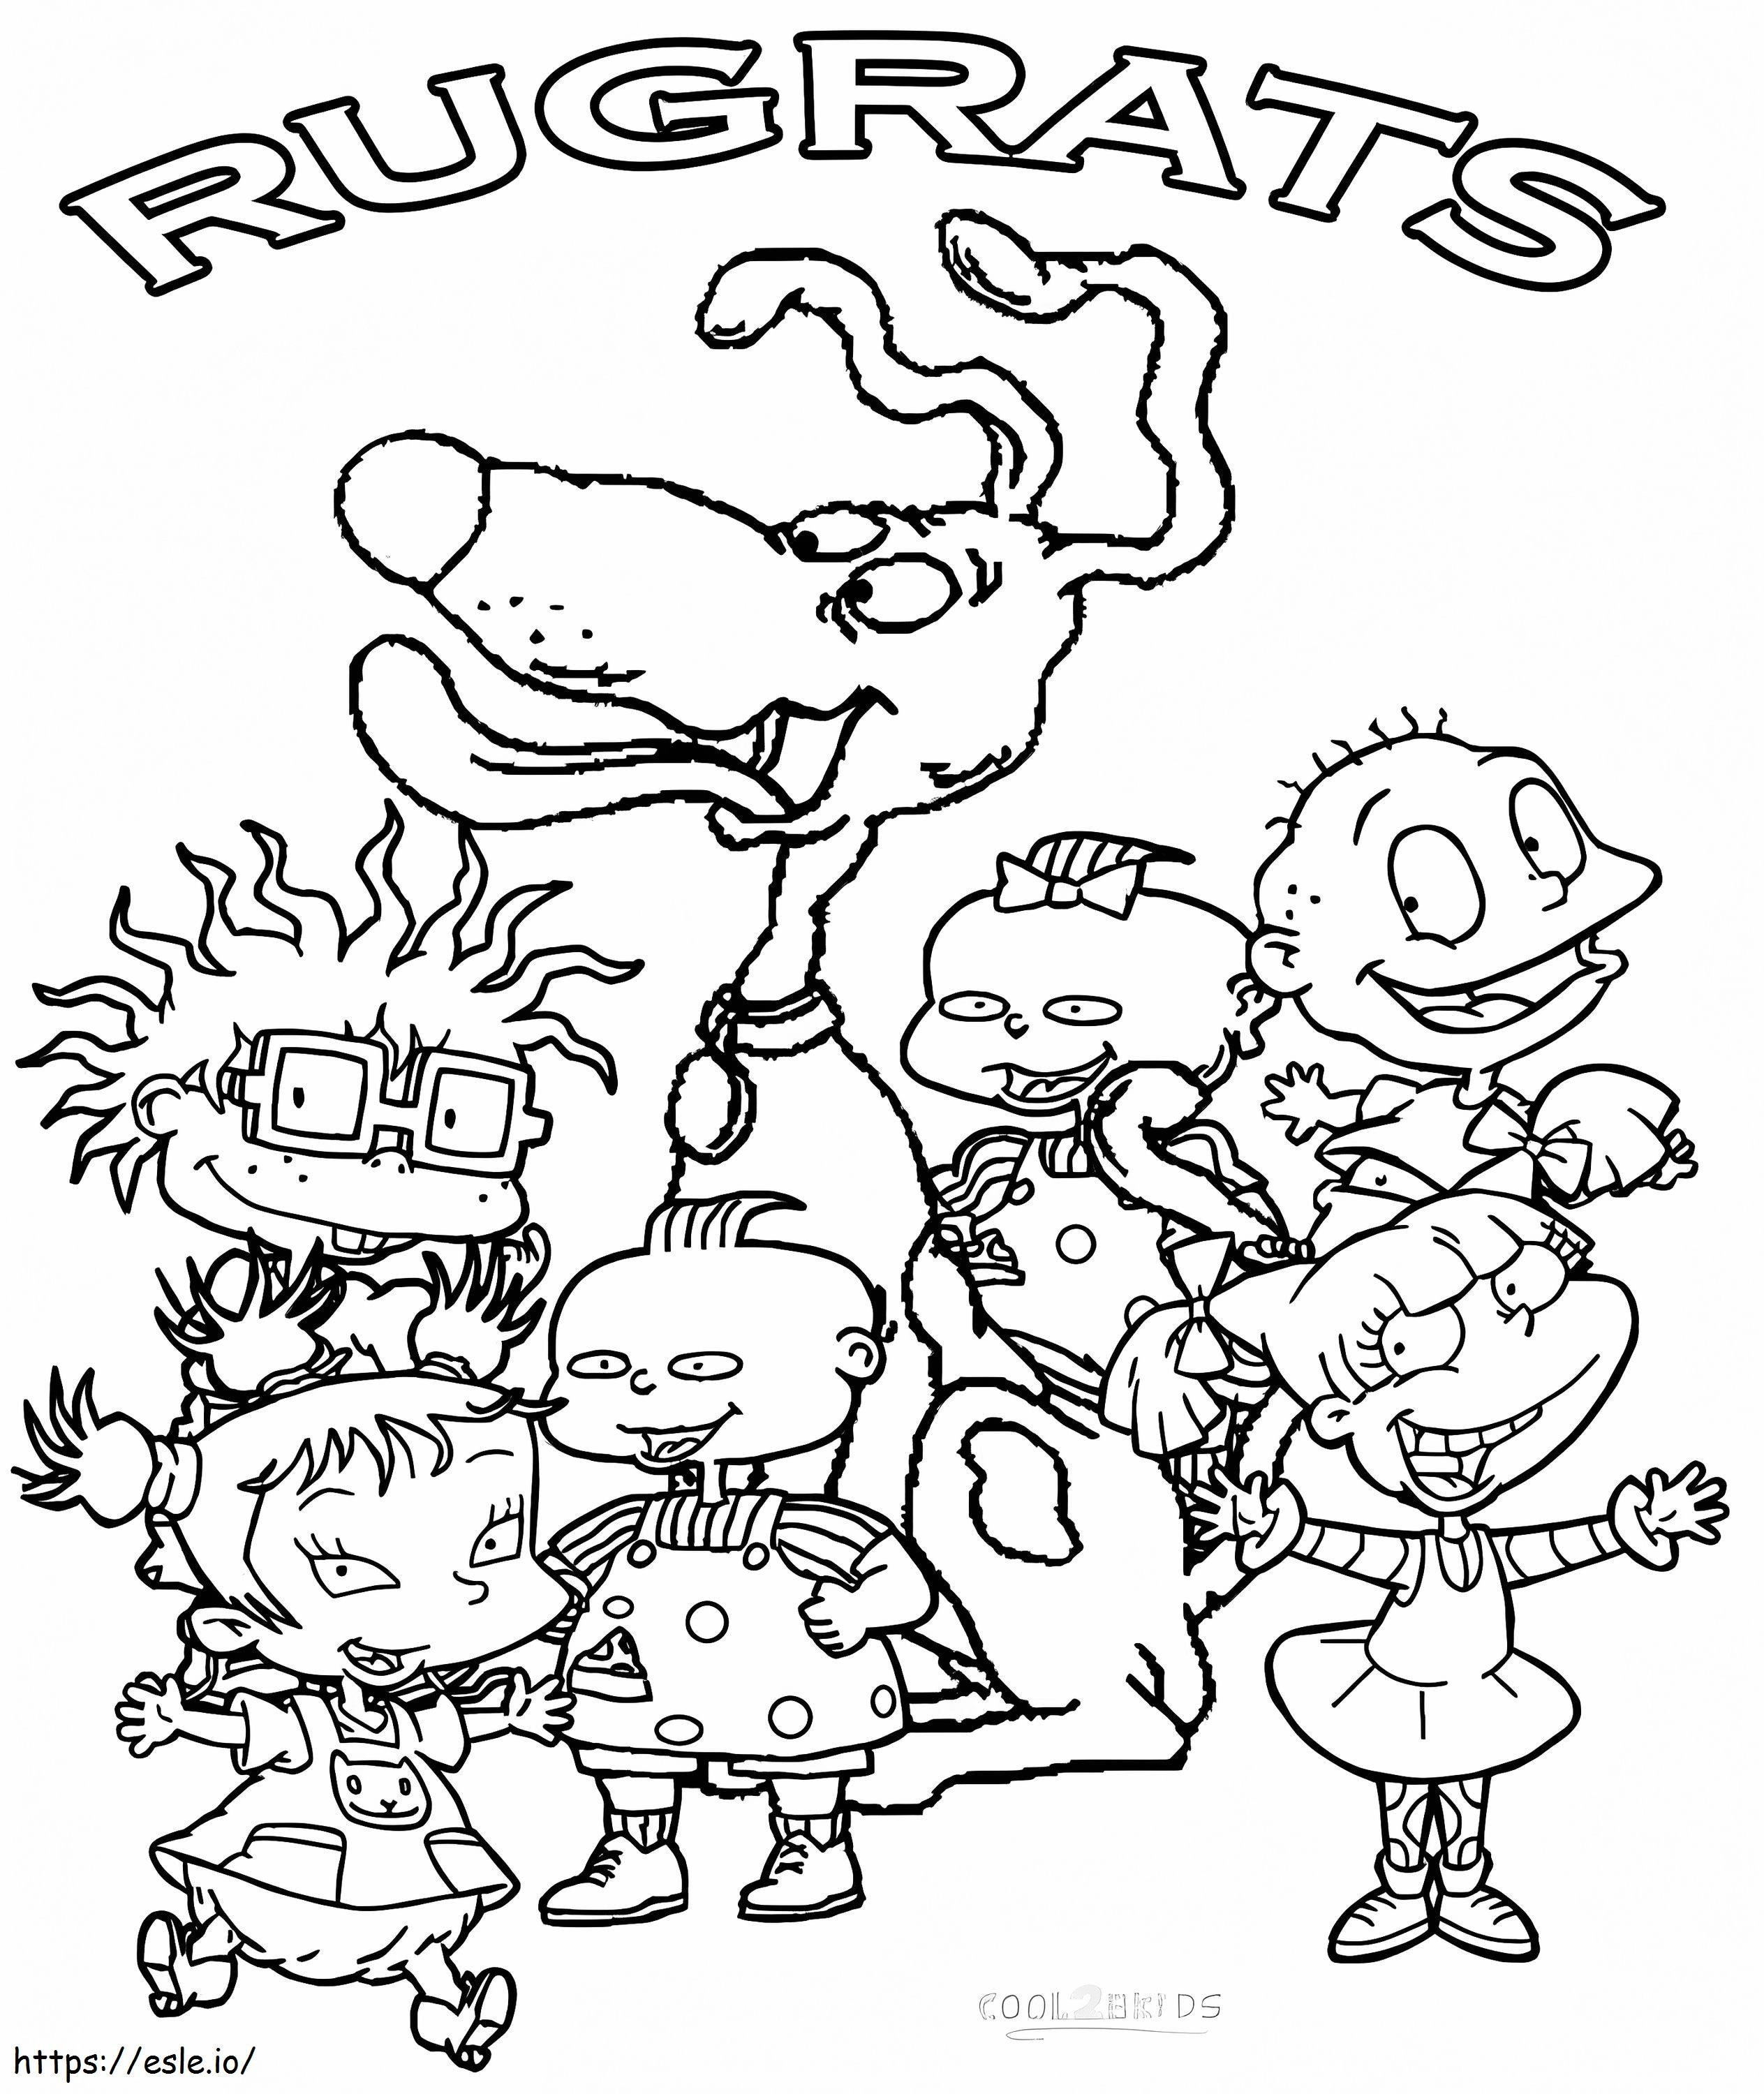 Personagens Rugrats para colorir